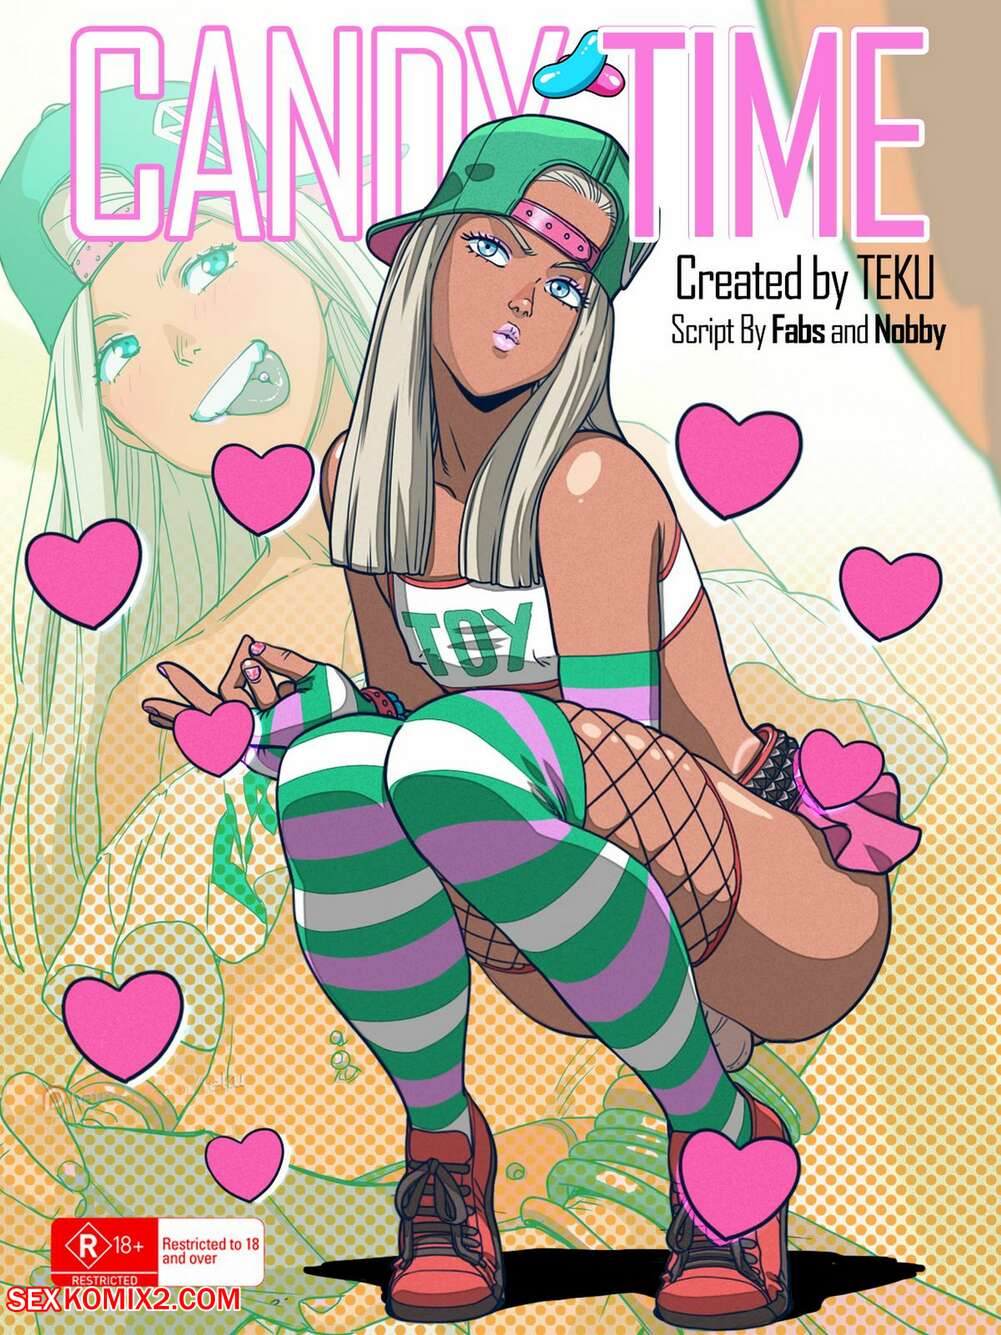 Adventure Time Porn Trap - âœ…ï¸ Porn comic Candy Time. Tekuho. Sex comic busty blondes with | Porn  comics in English for adults only | sexkomix2.com